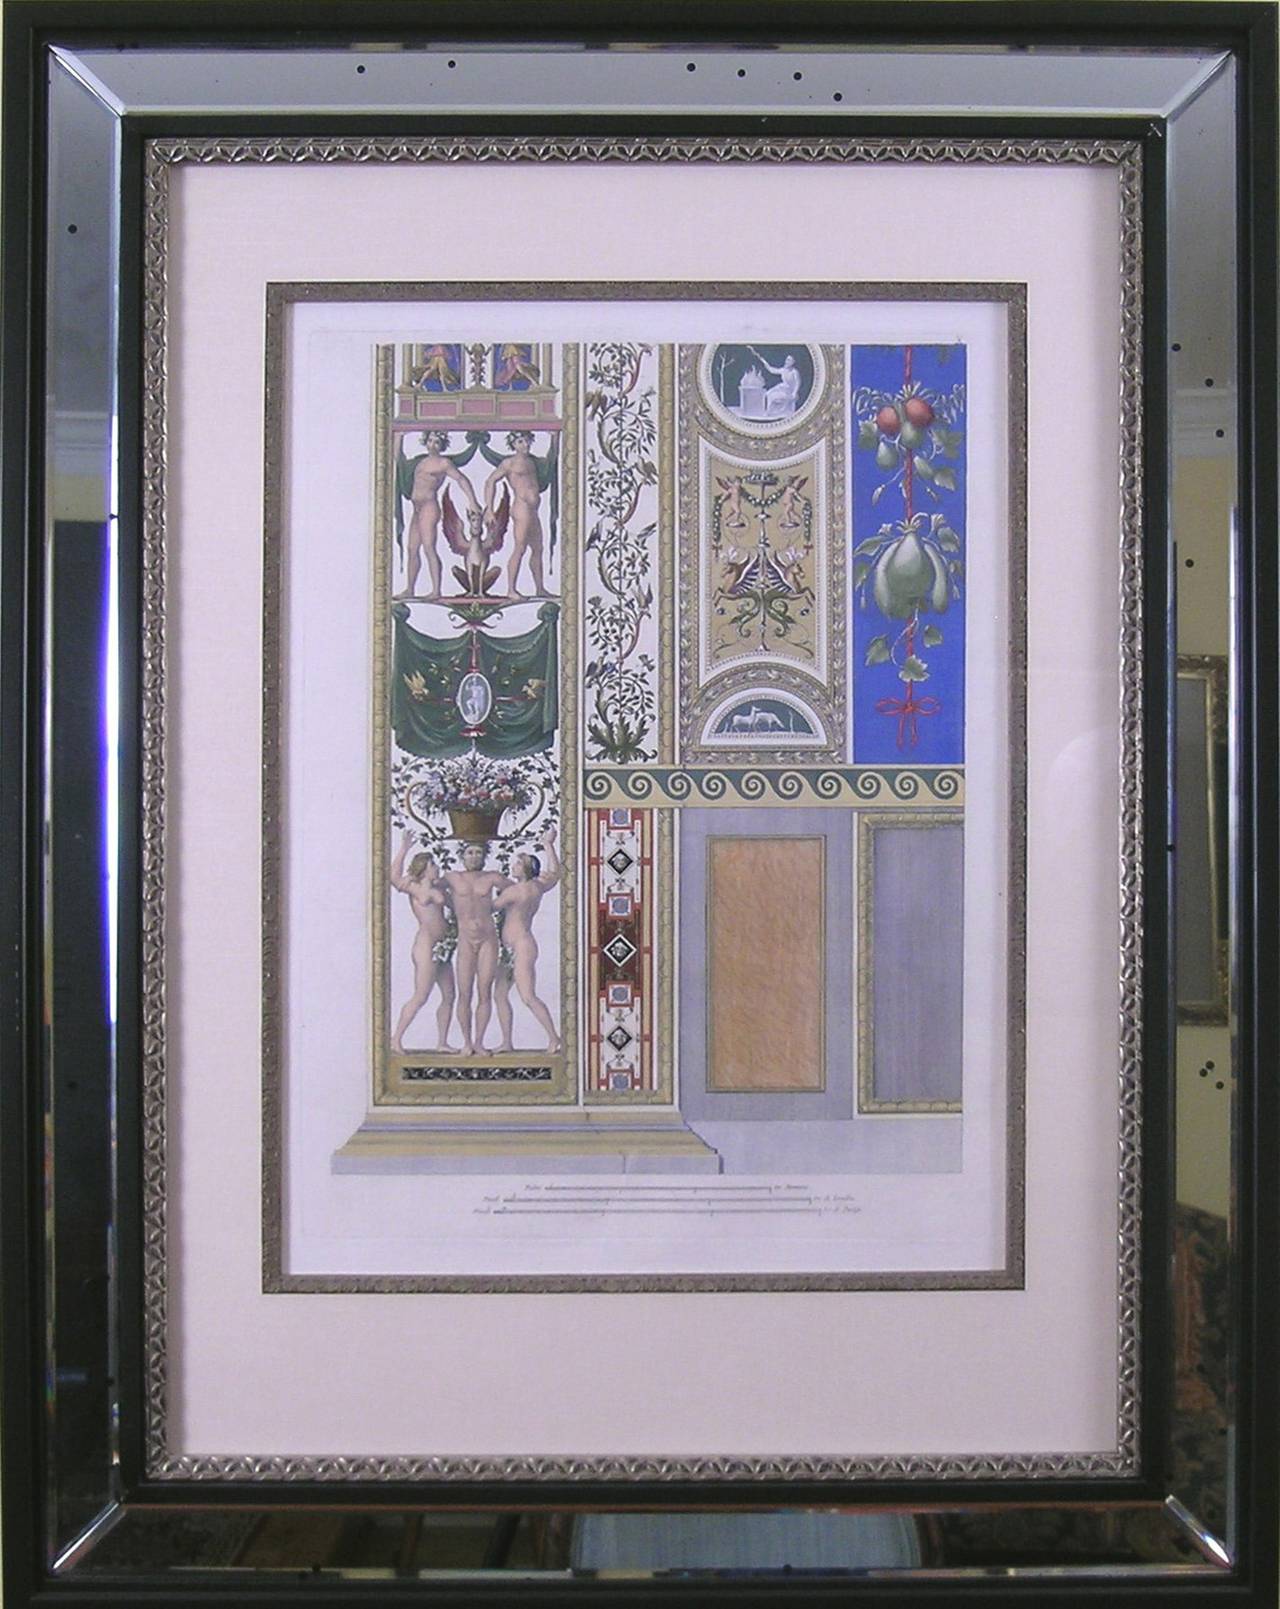 Raphael's Loggia.  Servierplatte X.  Untertasse mit Klappdeckel. Preis als Paar mit Pilaster-Oberteil